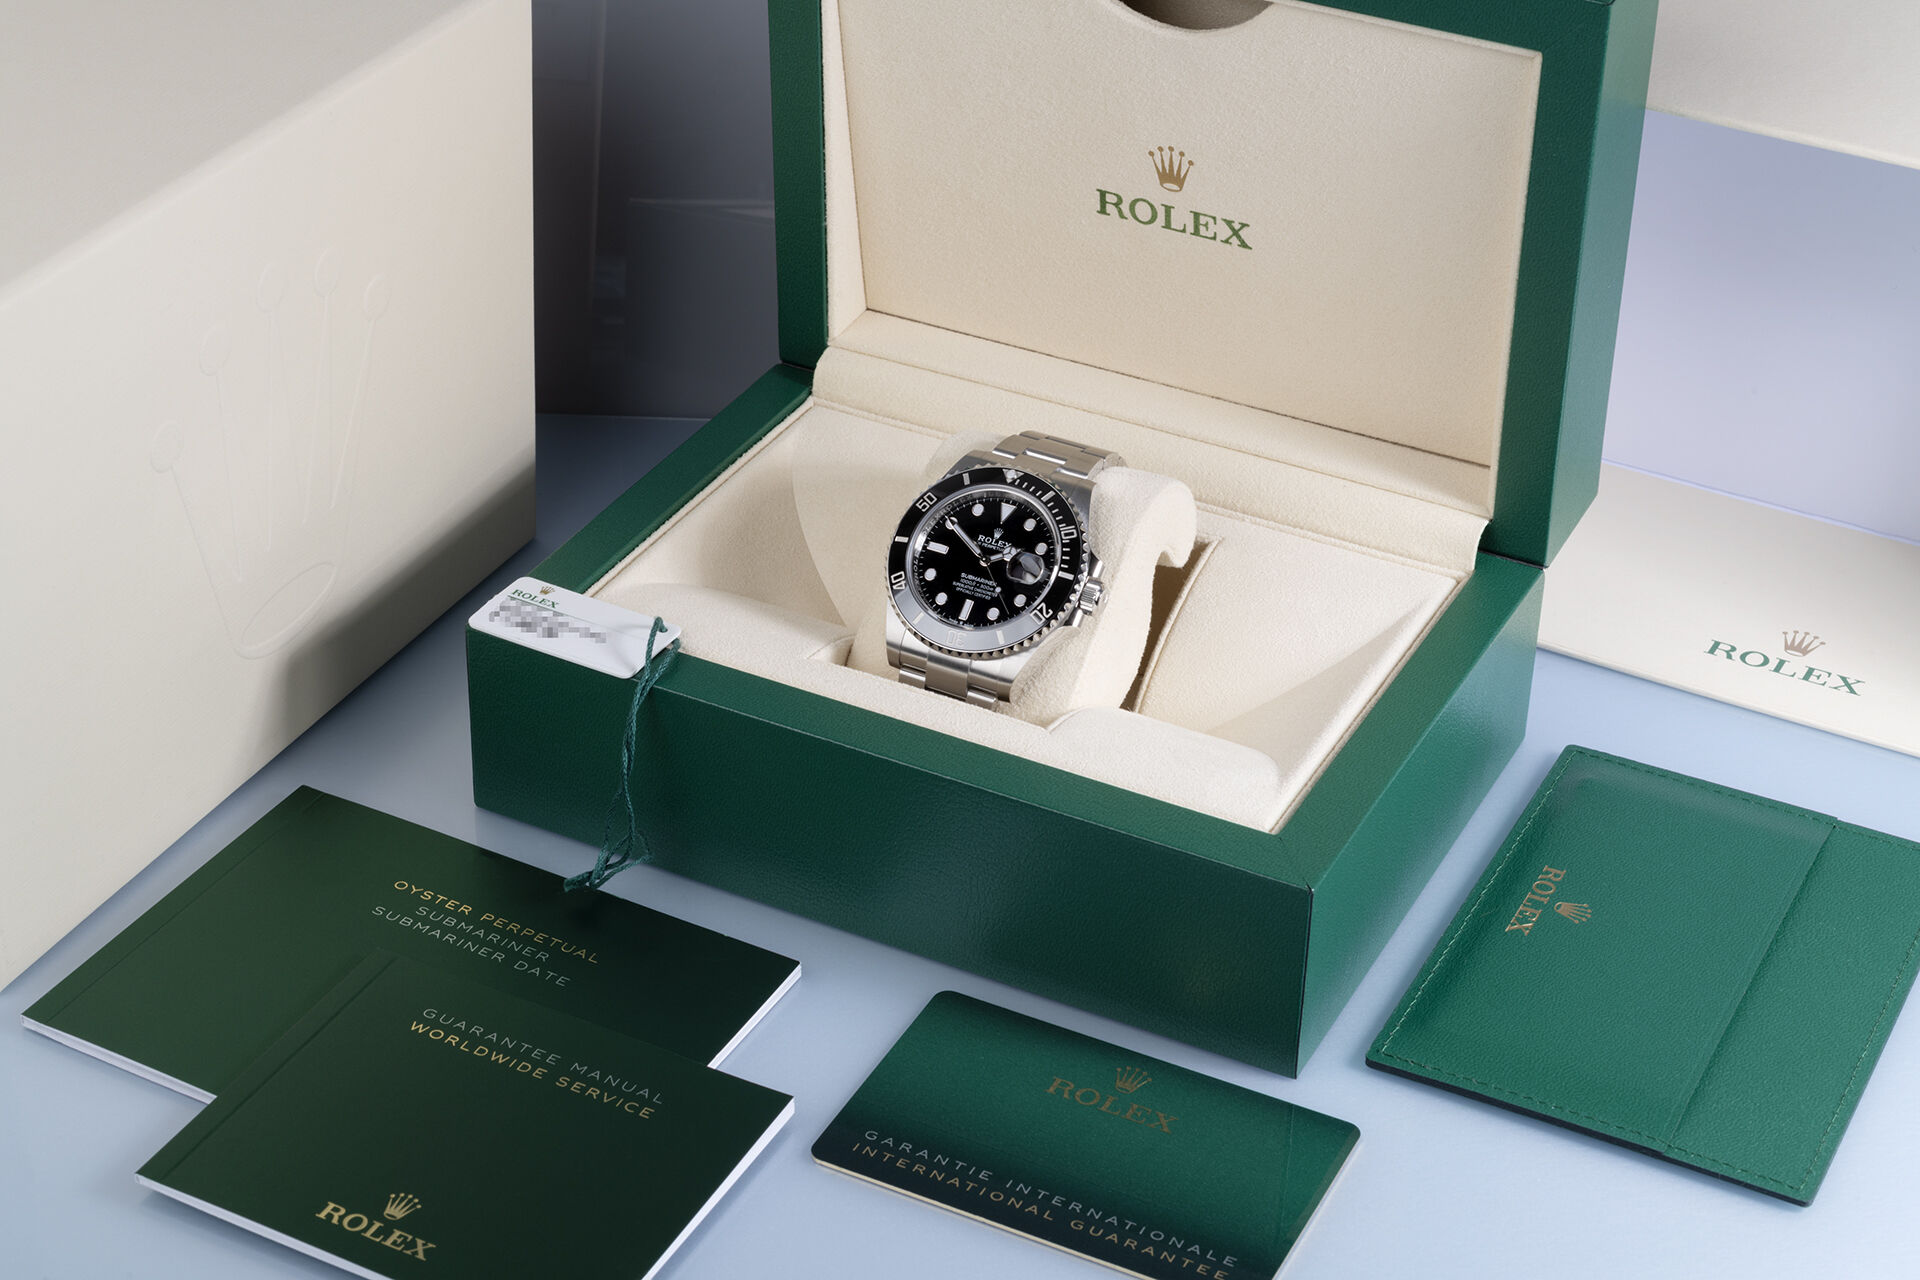 ref 126610LN | 5 Year Rolex Warranty | Rolex Submariner Date